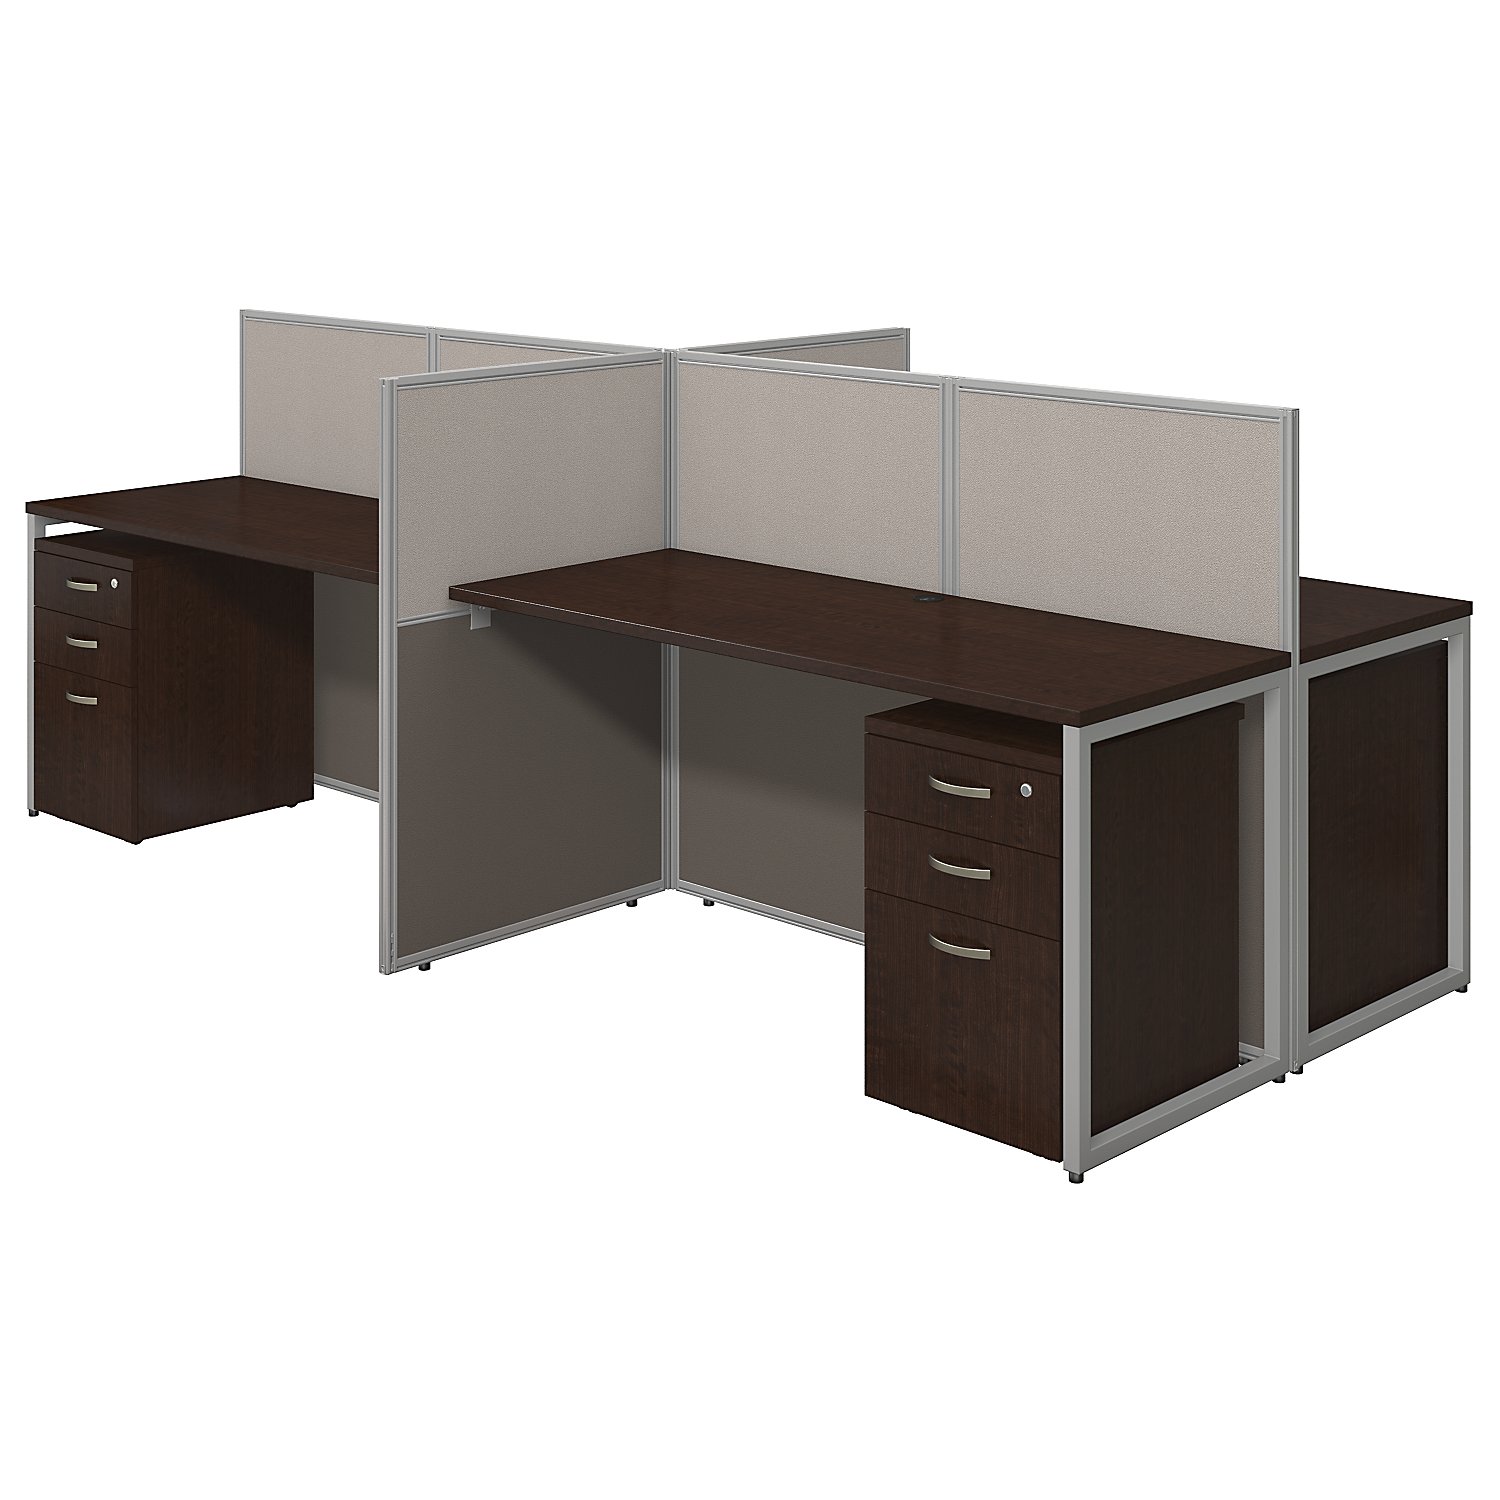 Cubicle Desk by cubicles.com